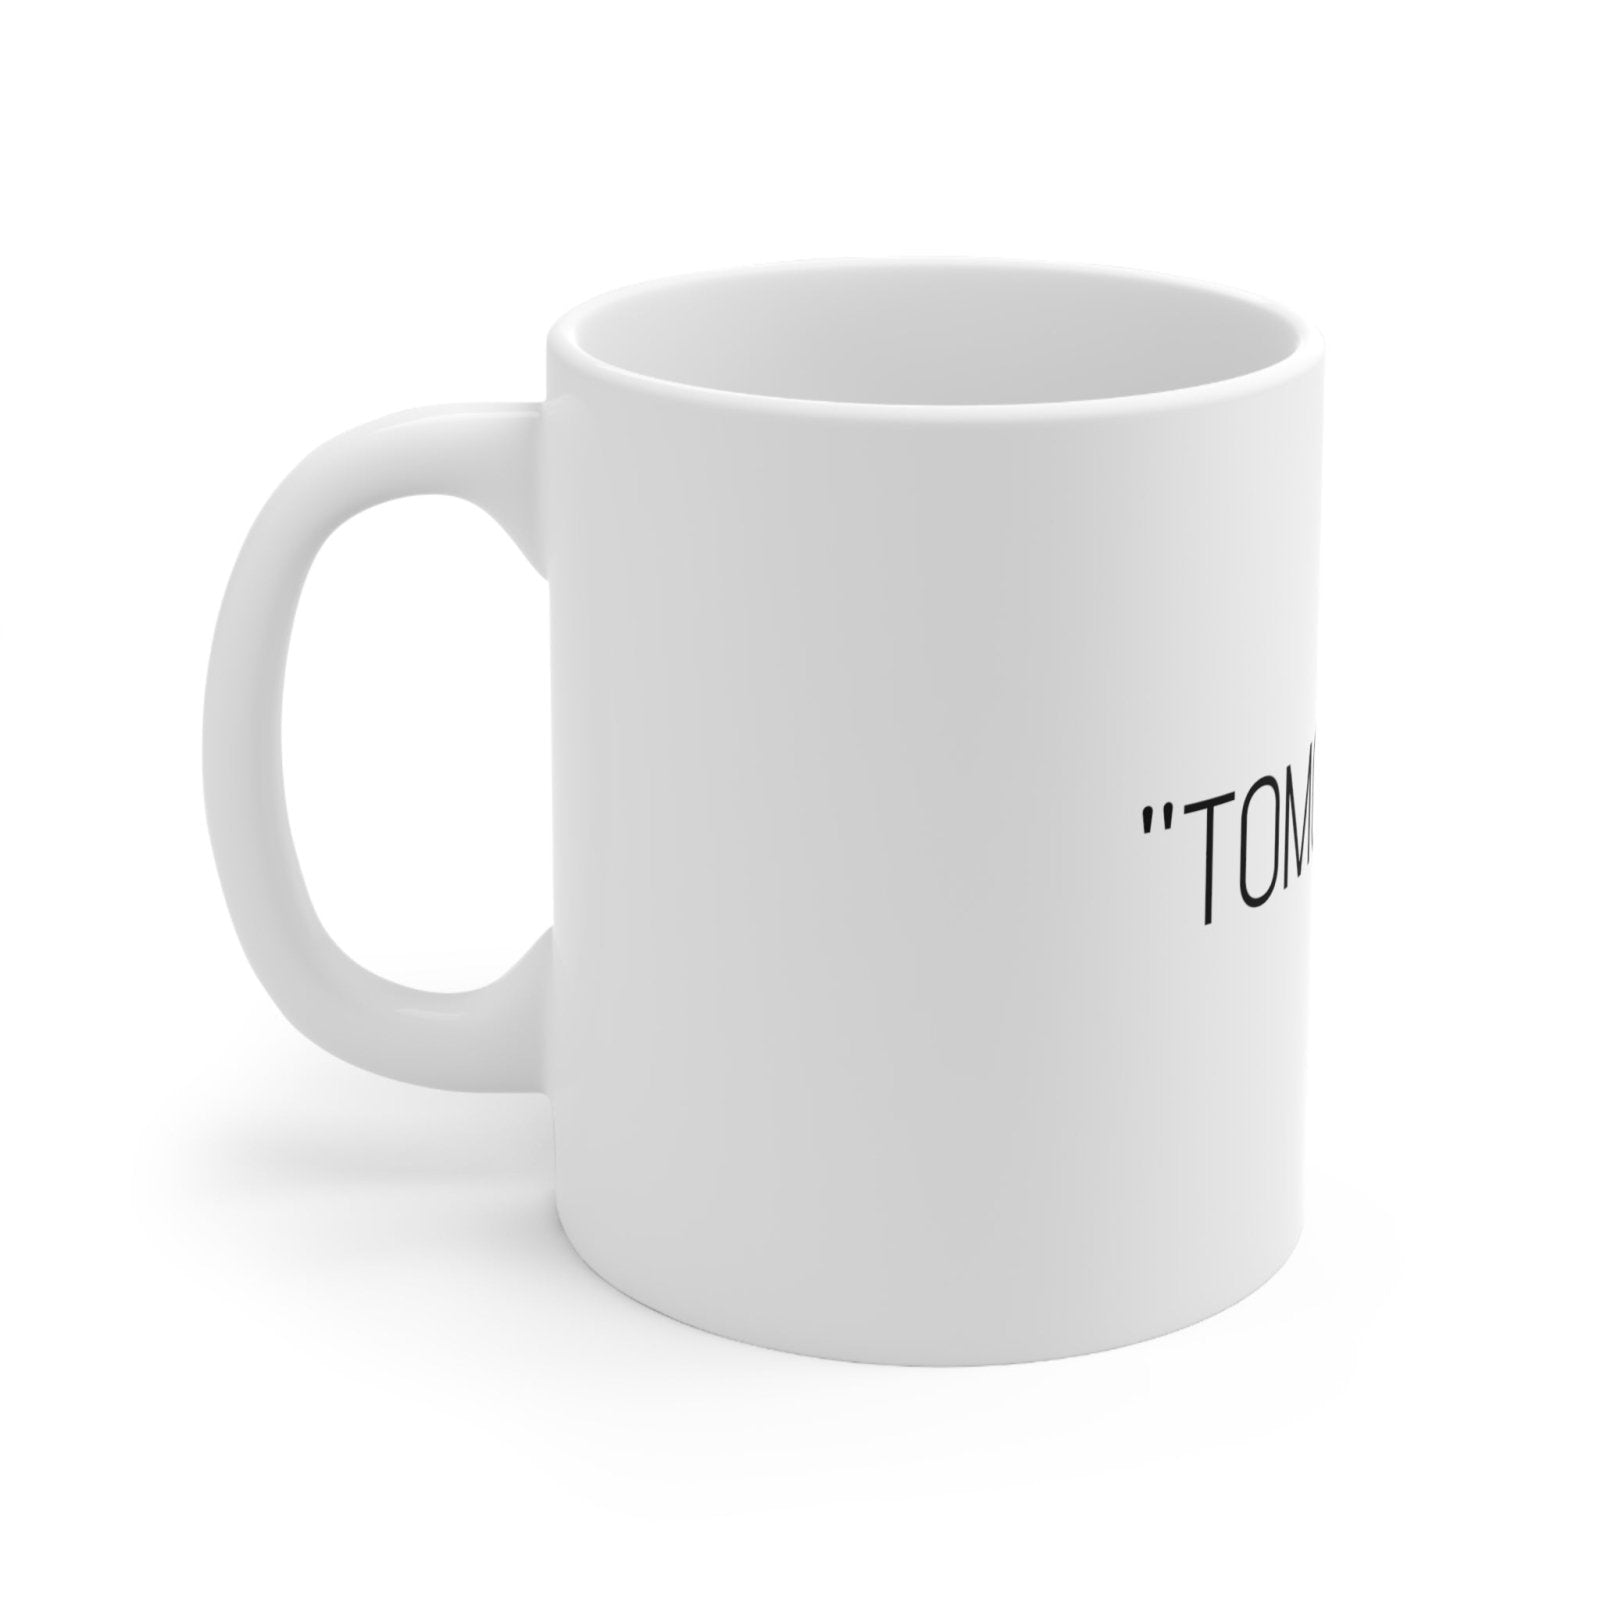 "TOMORROW" Motivational Ceramic Mug 11oz